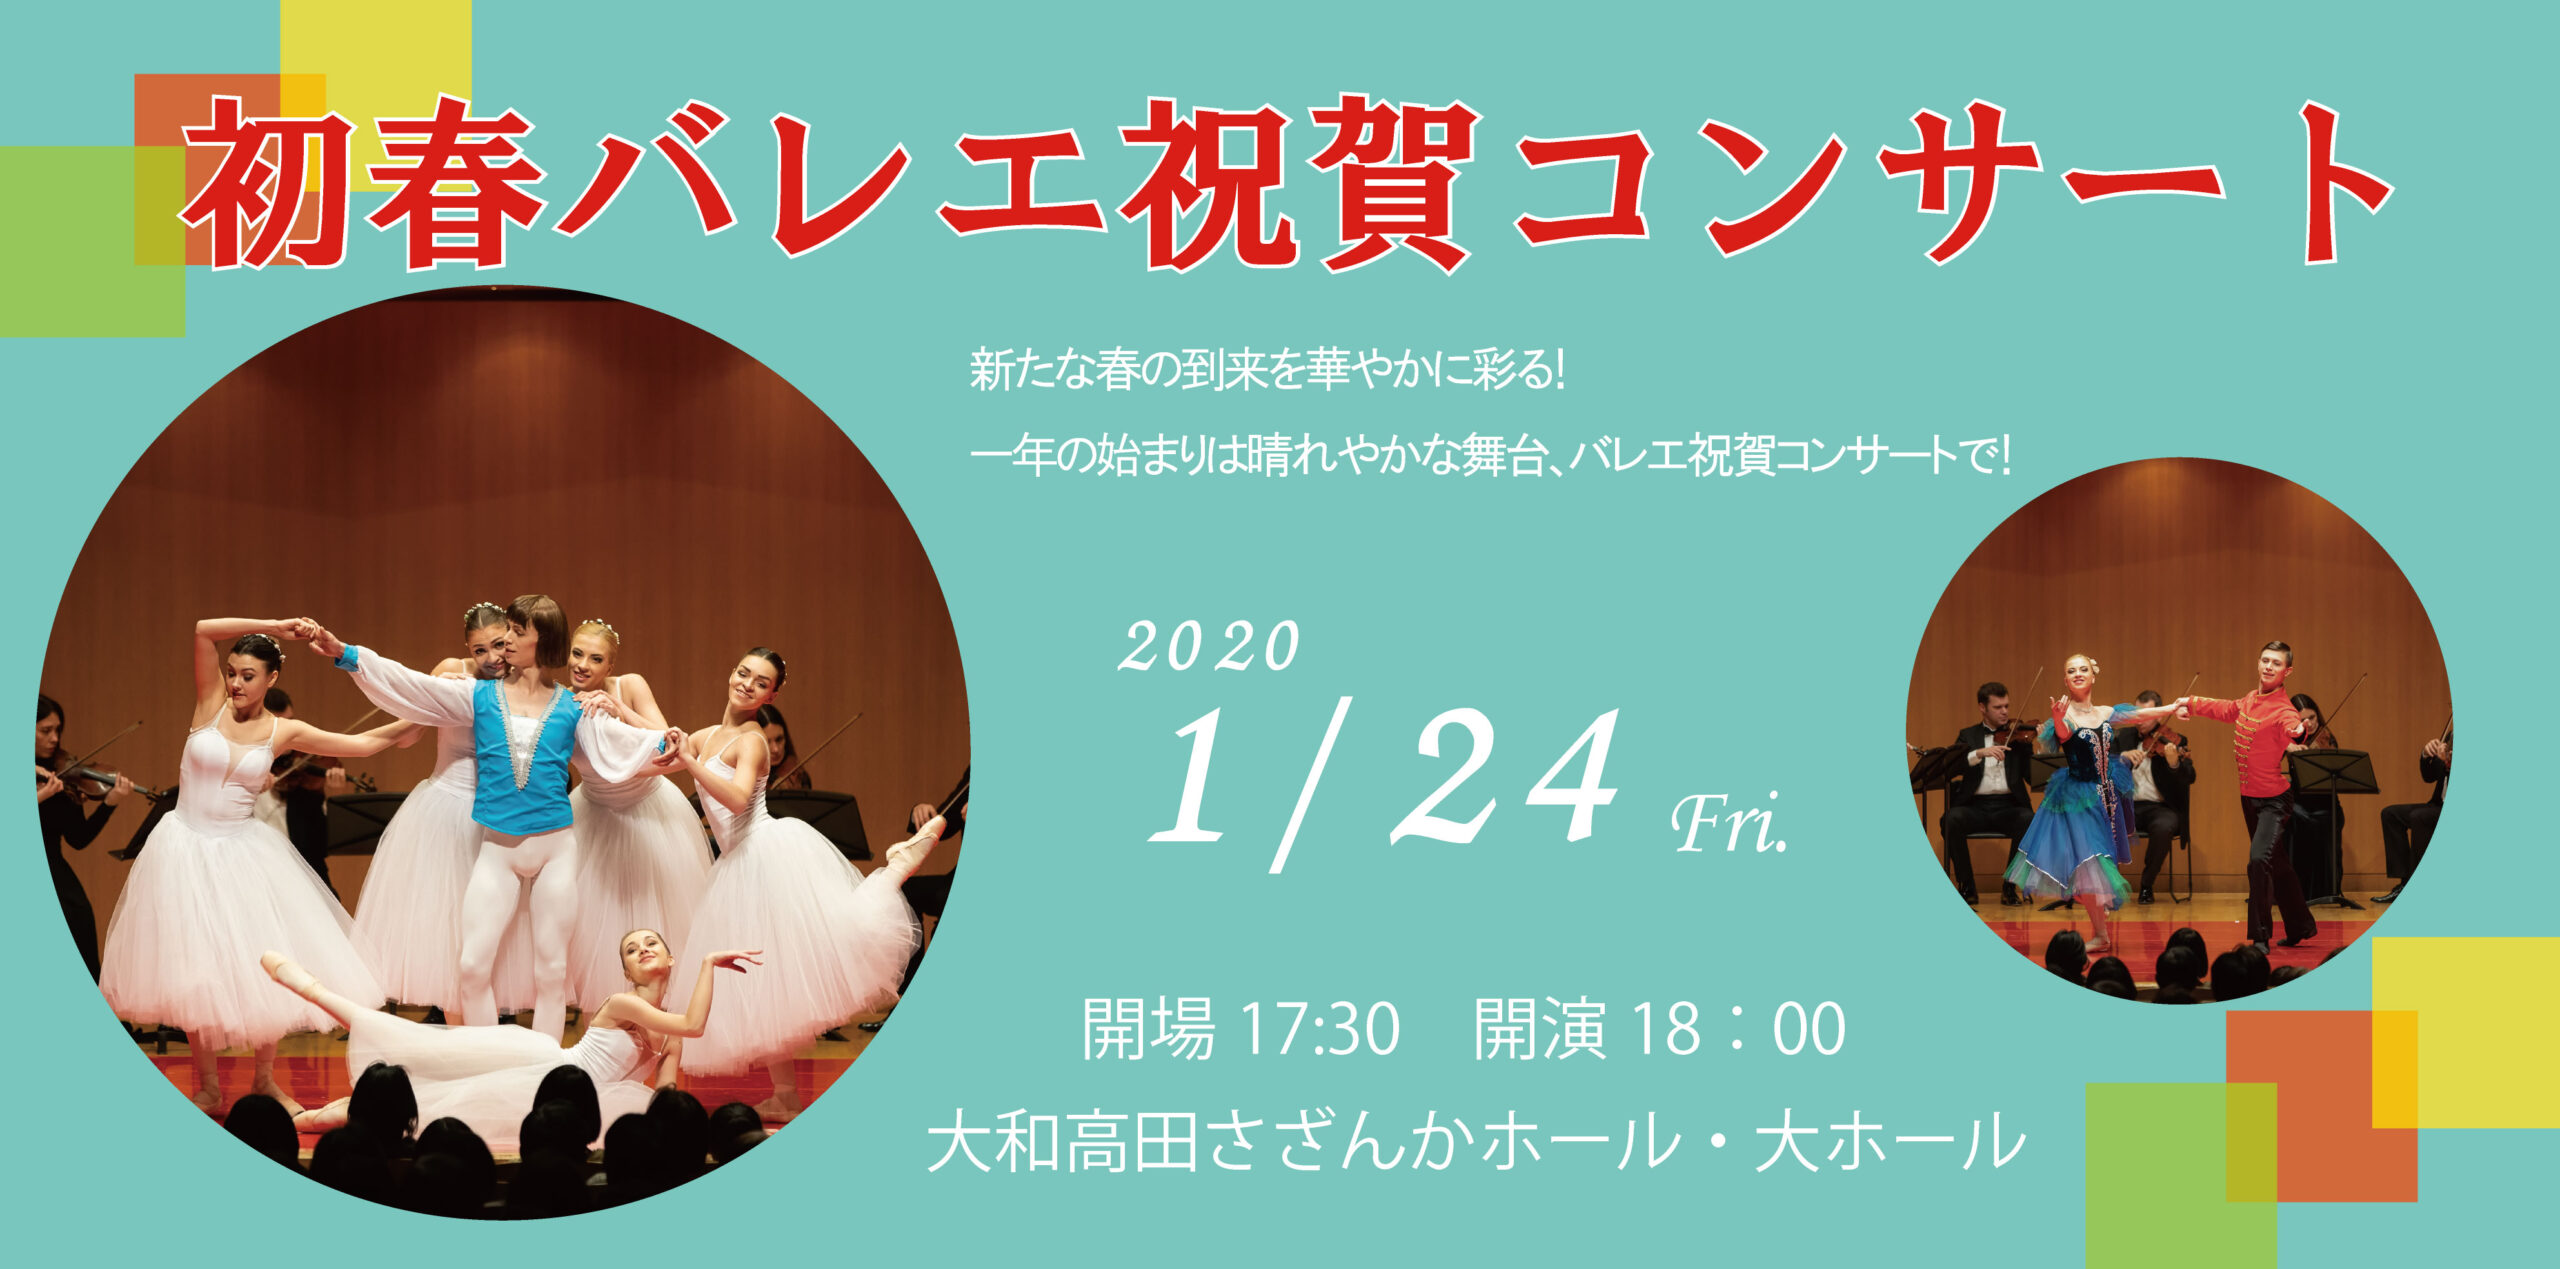 2019年、イベント、奈良県、大和高田市、12月、コンサート、ライブ、大和高田さざんかホール、観賞、バレエ祝賀コンサート。